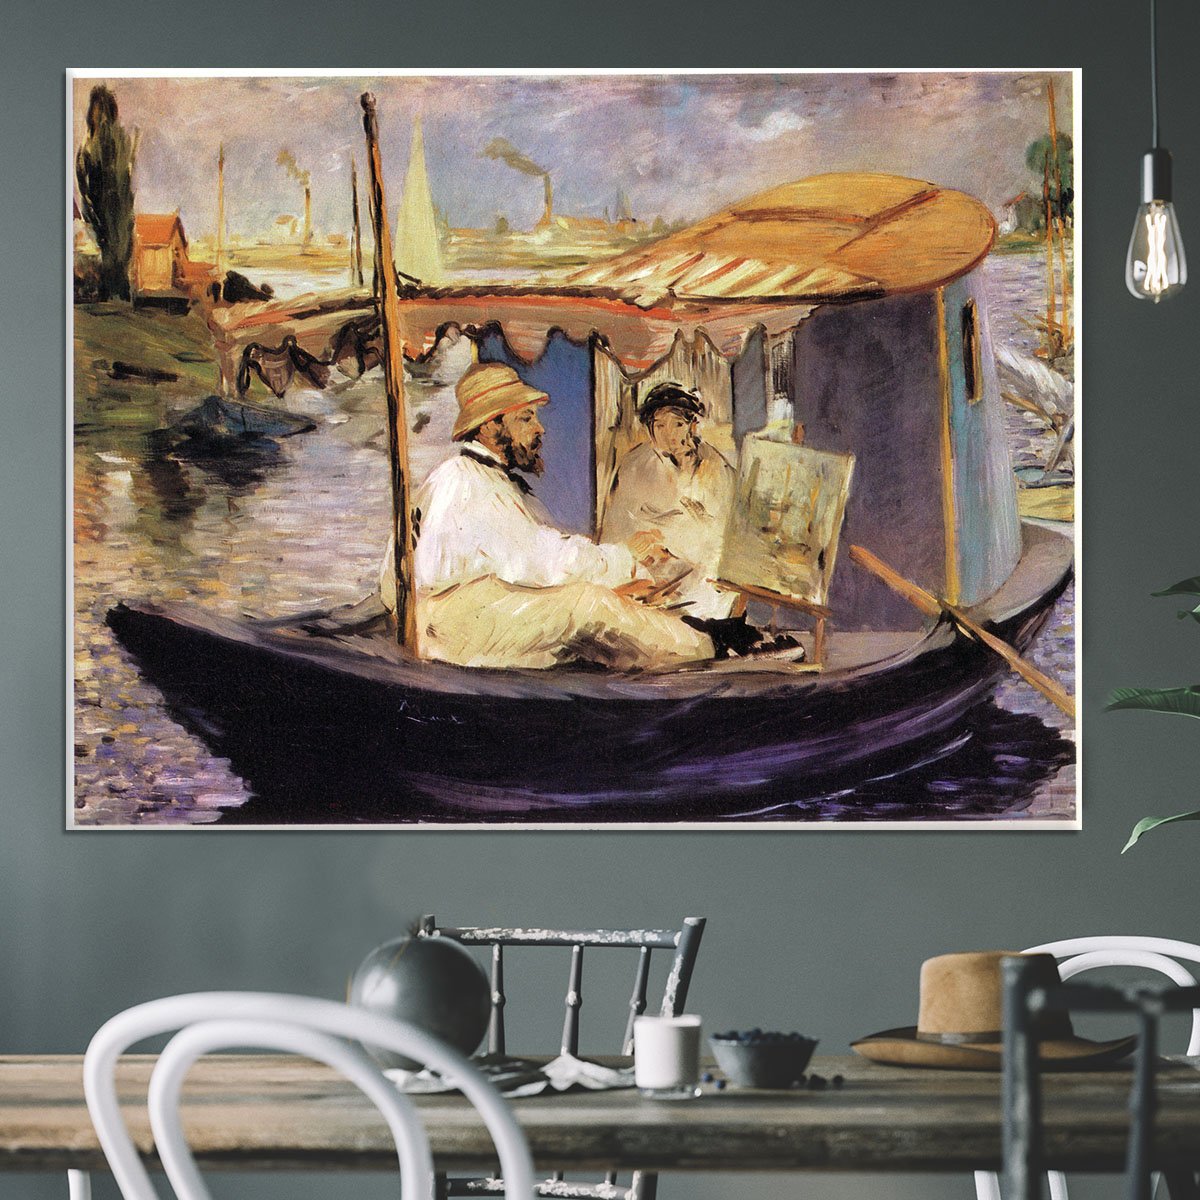 Claude Monet Dans Son Bateau Atelier 1874 by Manet Canvas Print or Poster